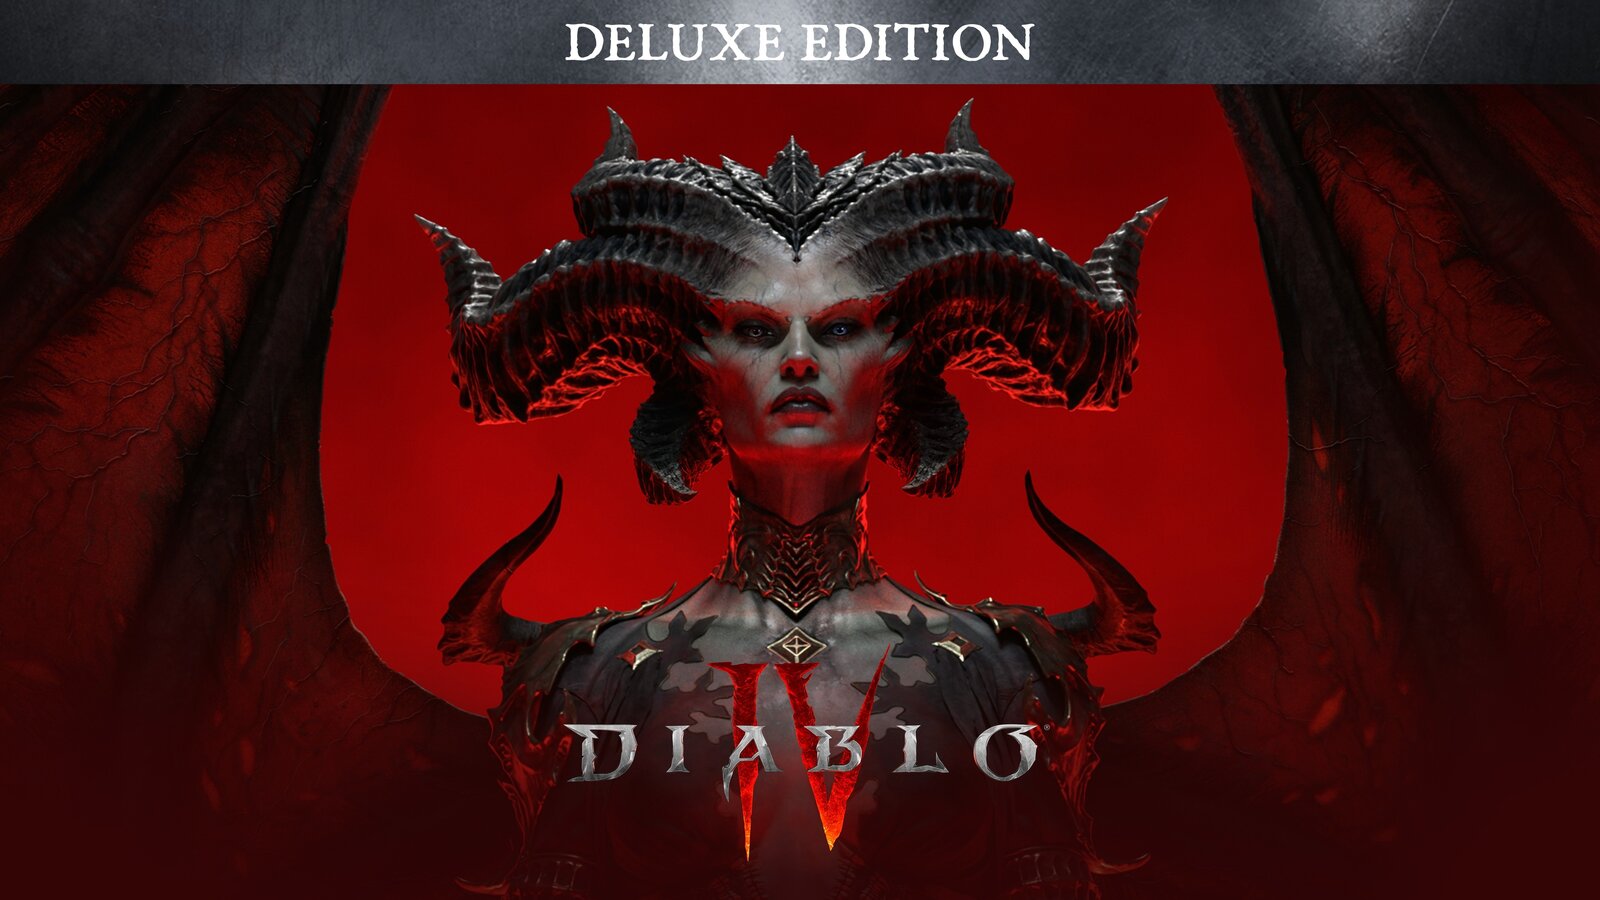 Diablo IV - Digital Deluxe Edition